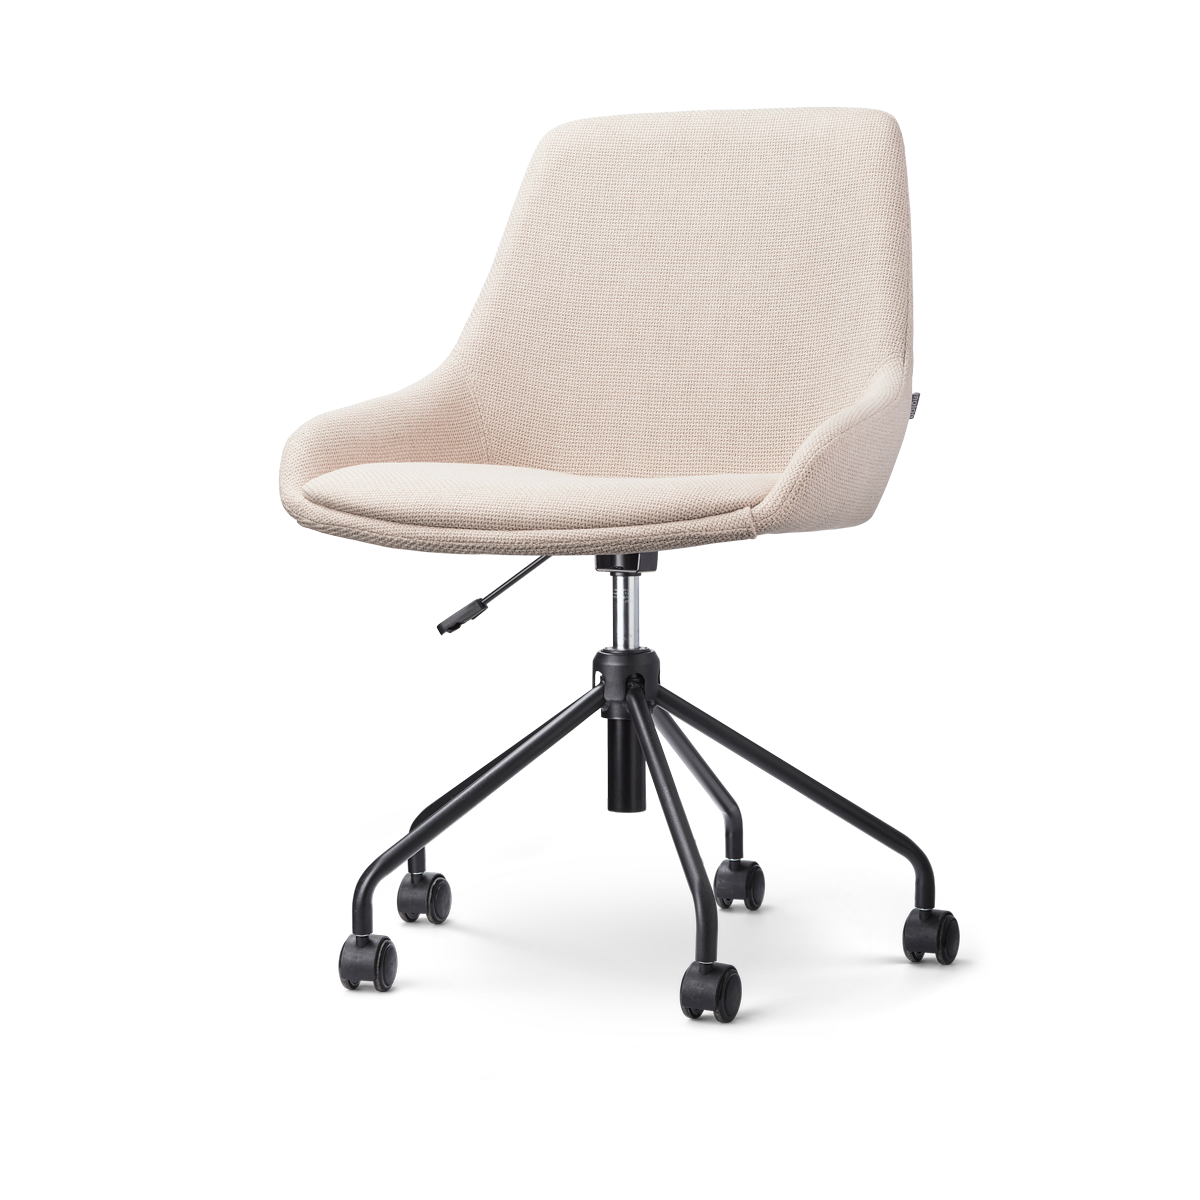 Nout-Isa bureaustoel beige - zwart onderstel